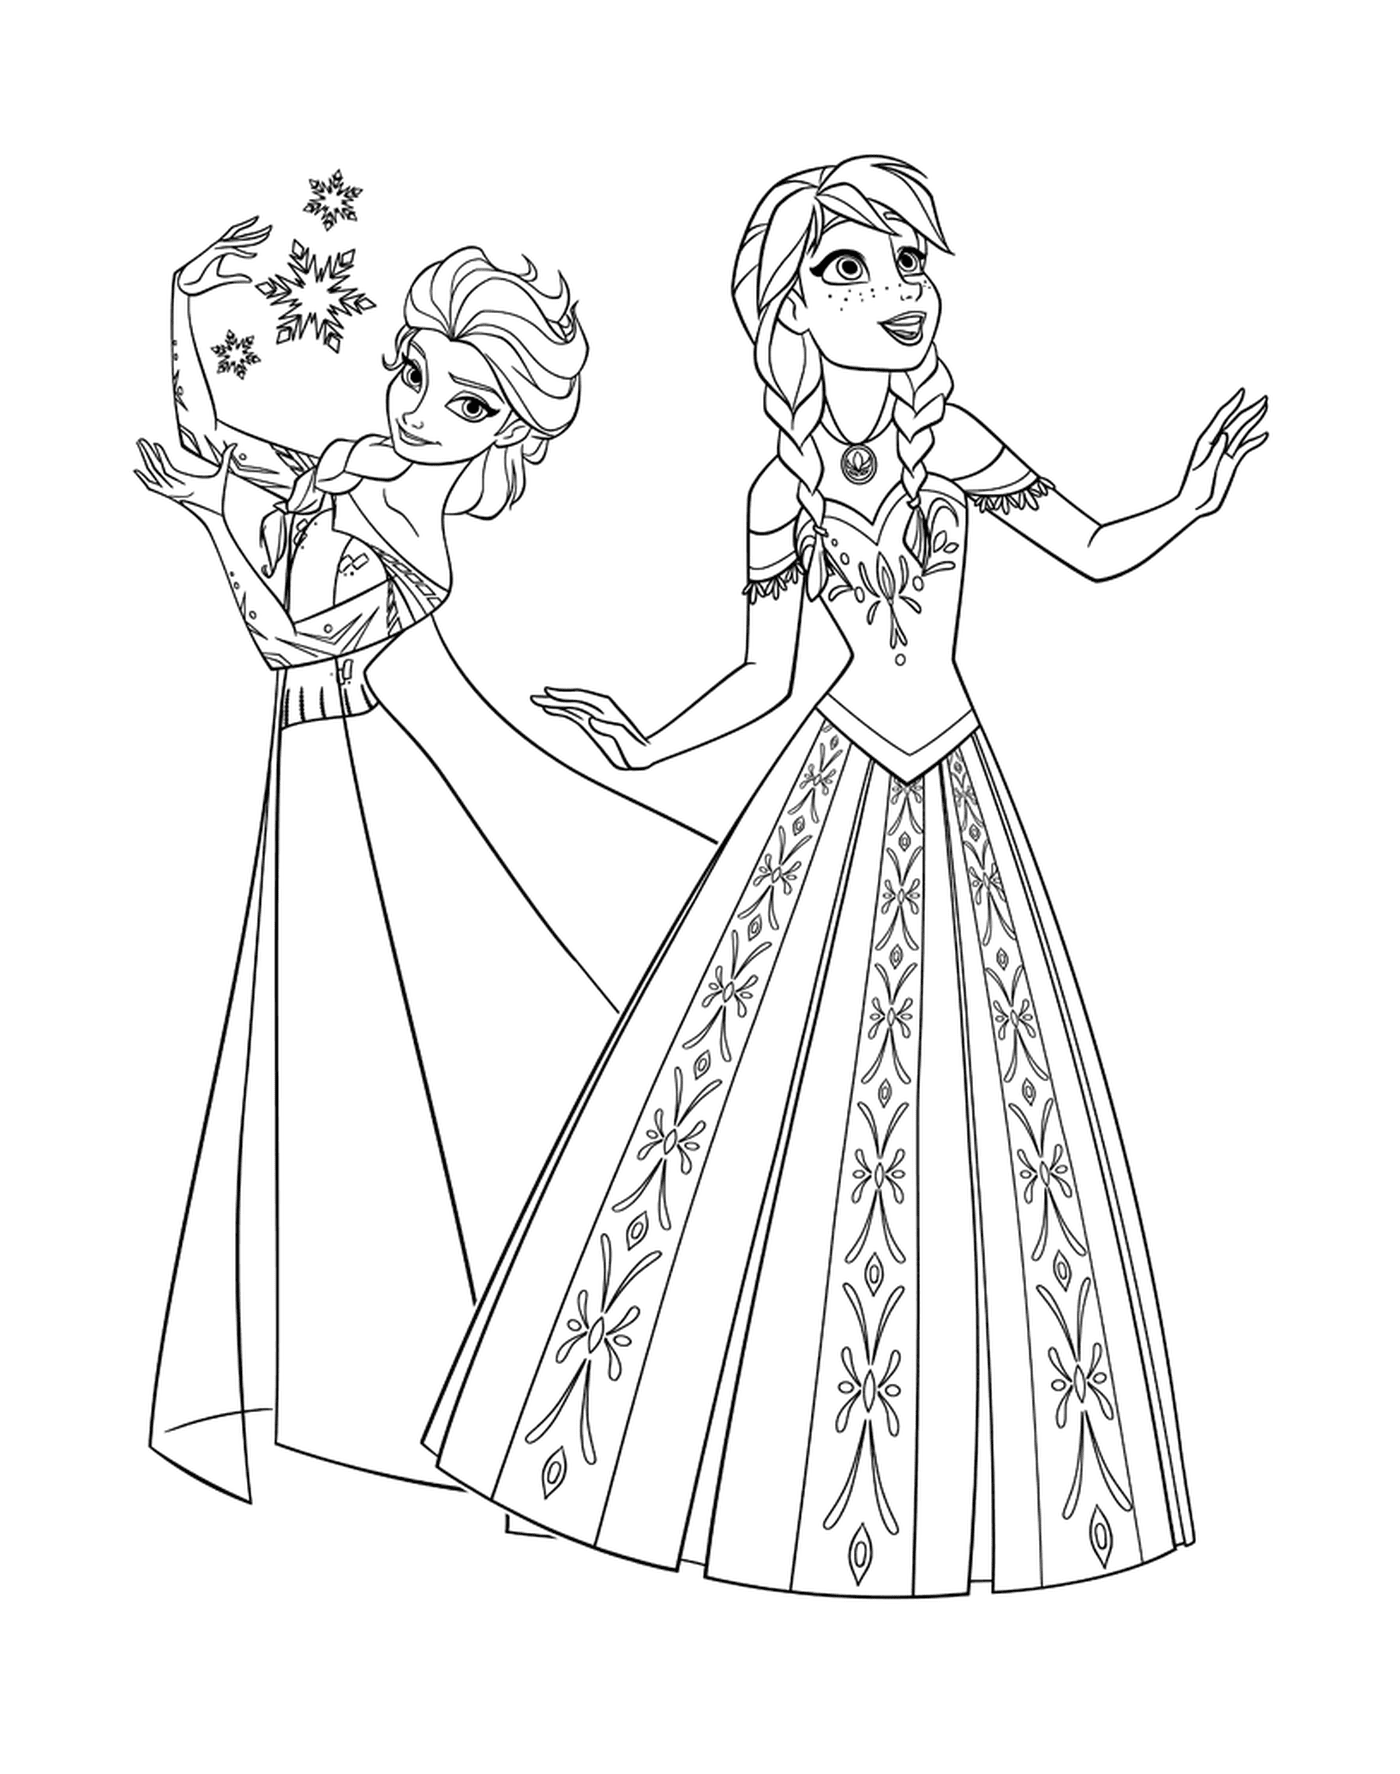  Anna ed Elsa, Principesse della Regina delle Nevi 